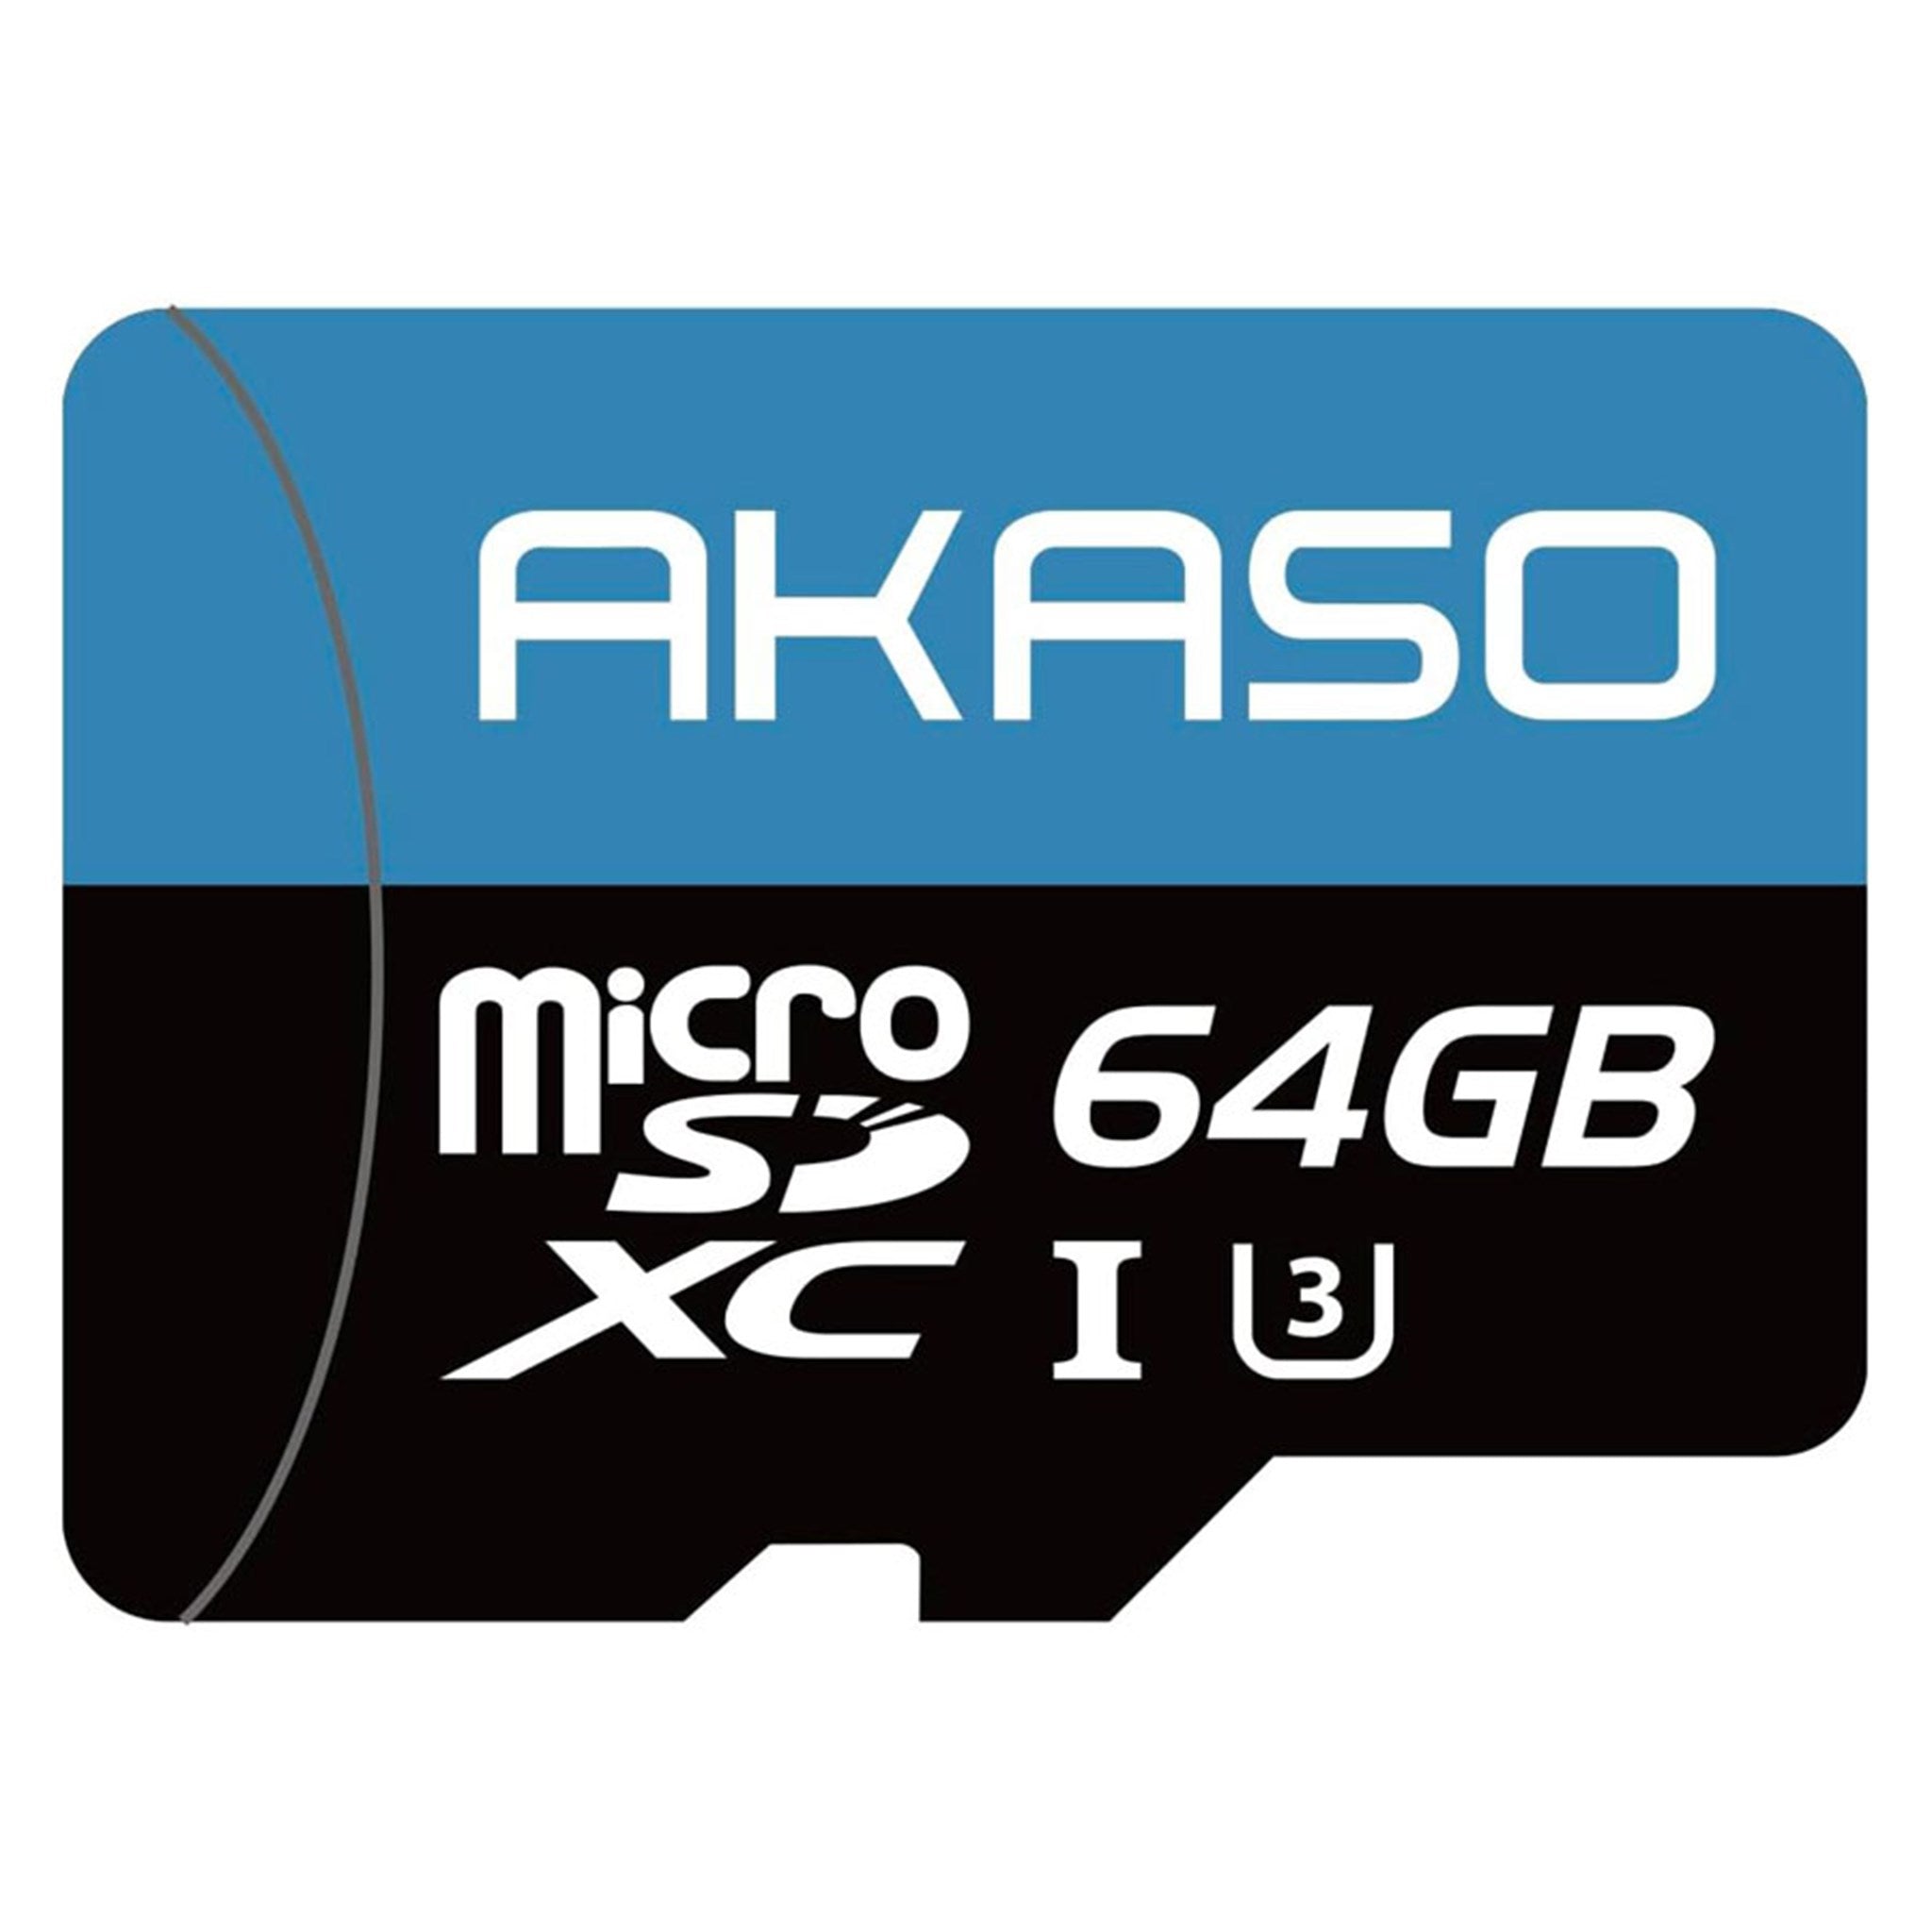 ACPC0002 BK 01 Akaso Akaso 64Gb Micro SD Card 1